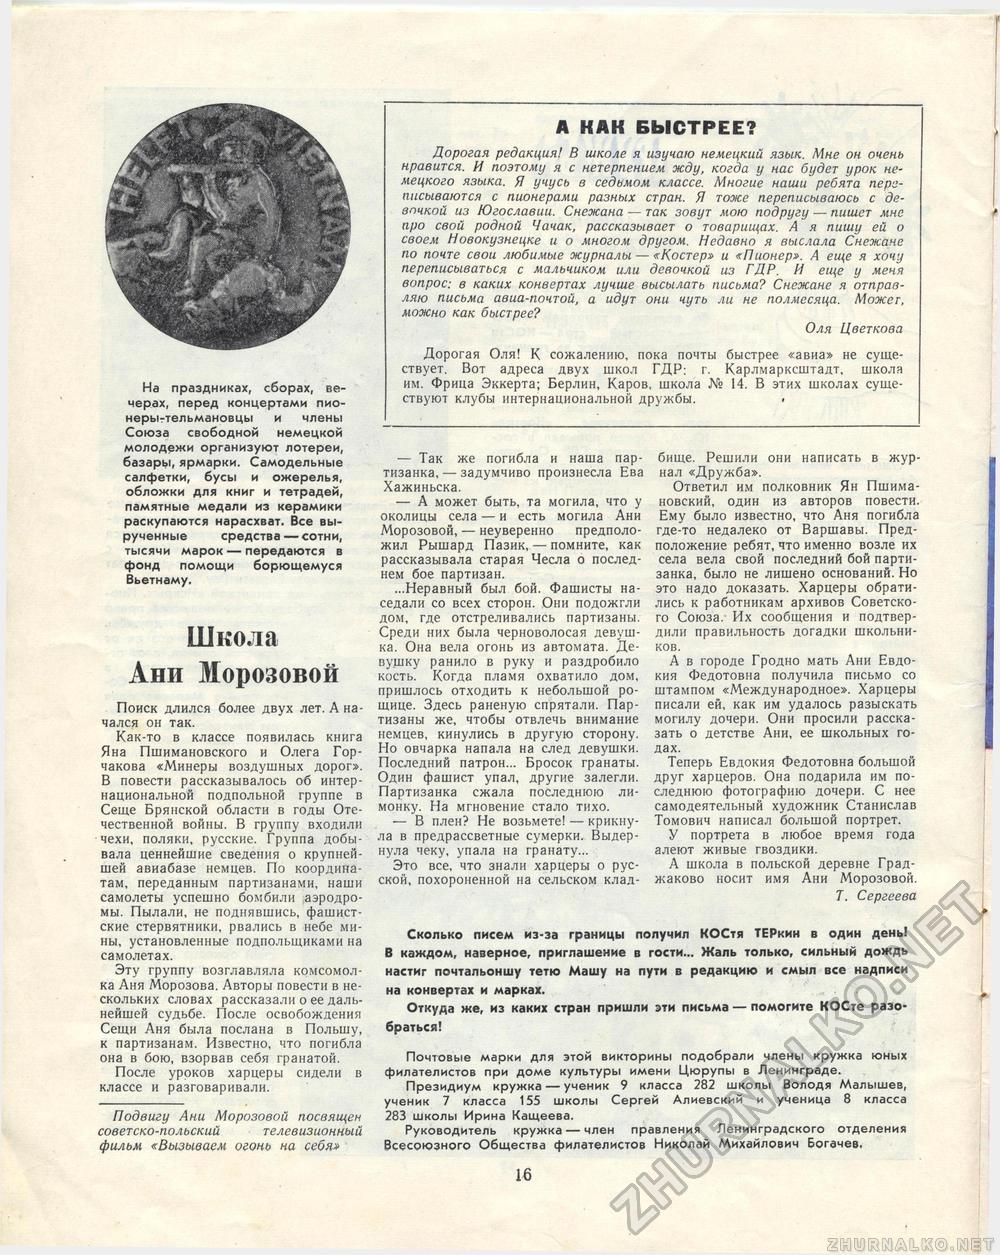  1968-03,  18